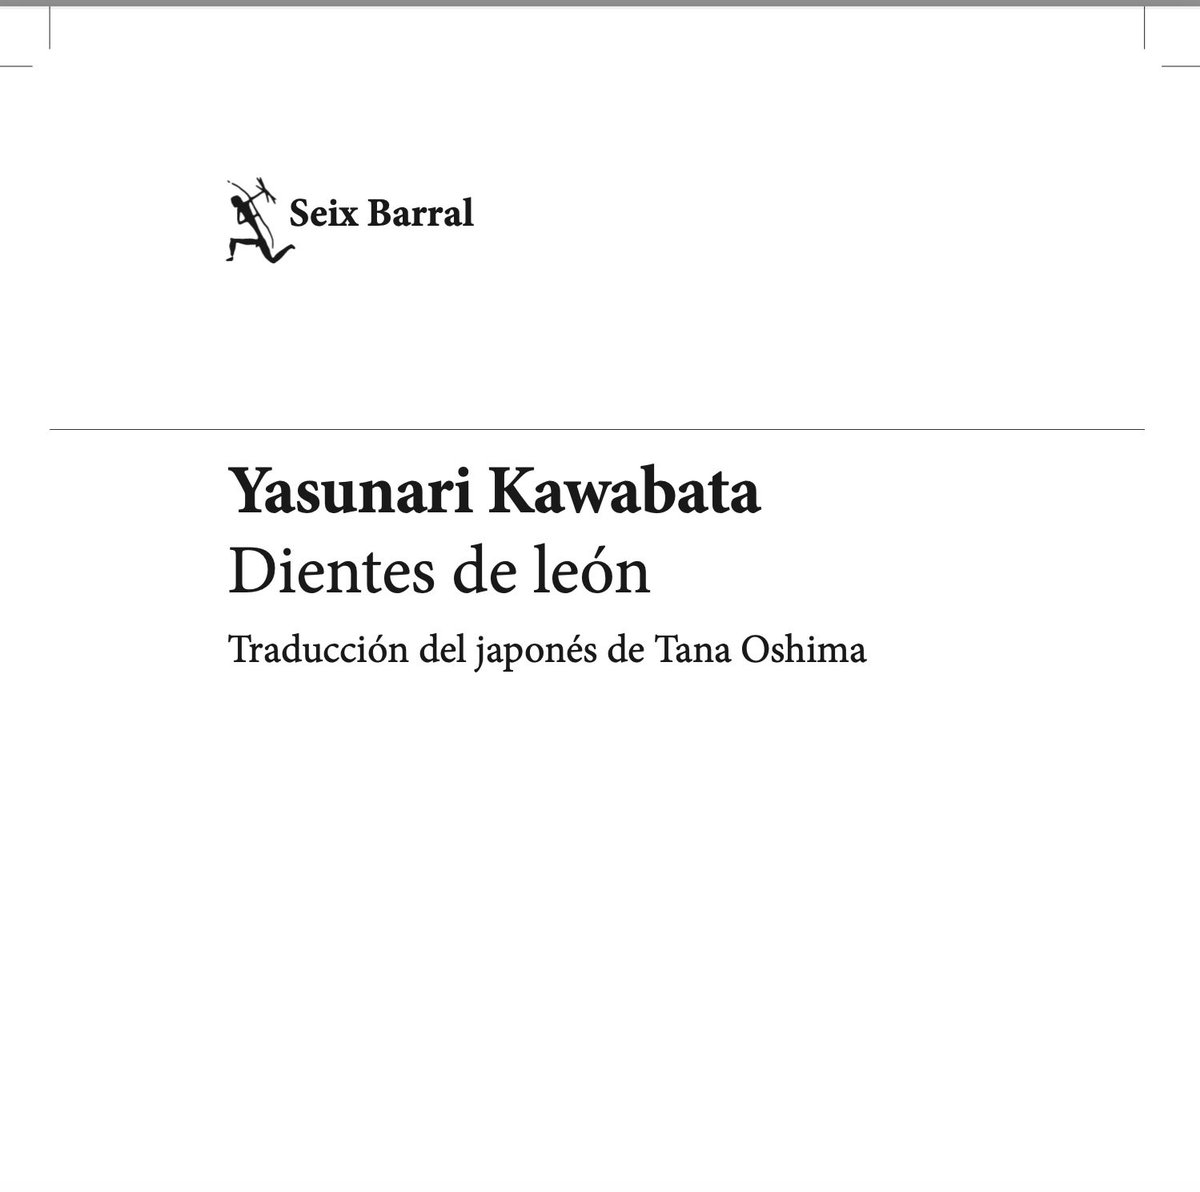 He traducido a Kawabata. Llevaba tiempo deseándolo y aquí está. Este es un libro que es como un diente de león 🌼. Es también una de las pocas traducciones al español que se han hecho de Kawabata directamente del japonés. Gracias @mobymartin por recomendarme a los editores!